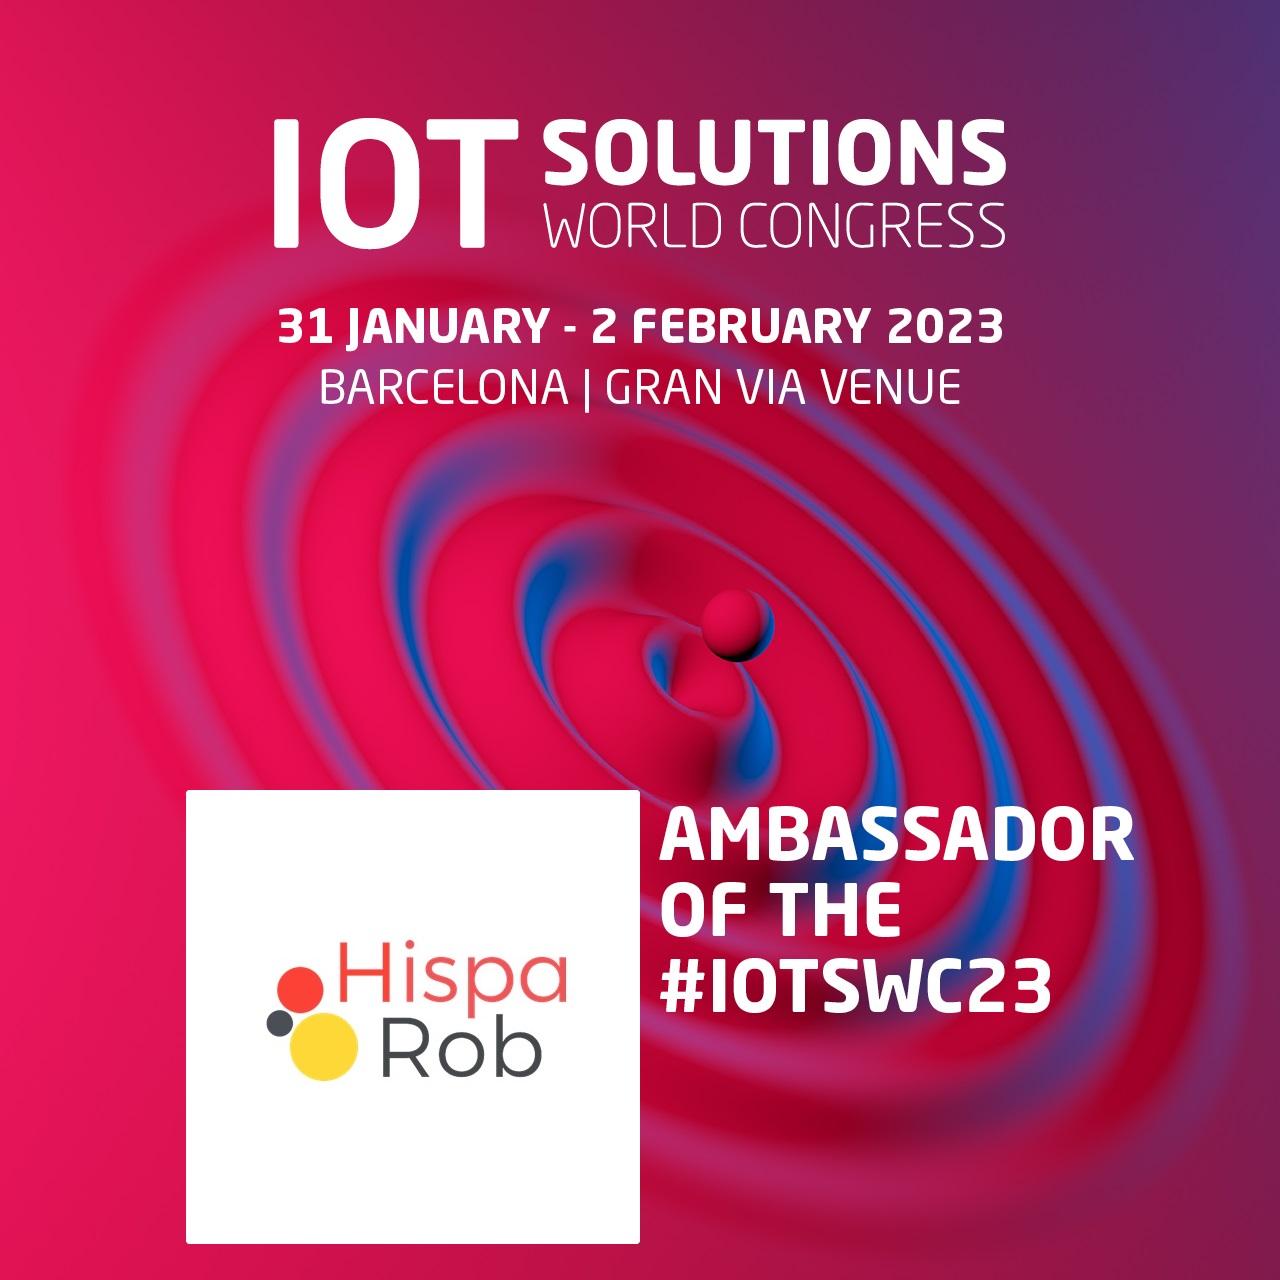 Todo preparado para el IoT Solutions World Congress 2023